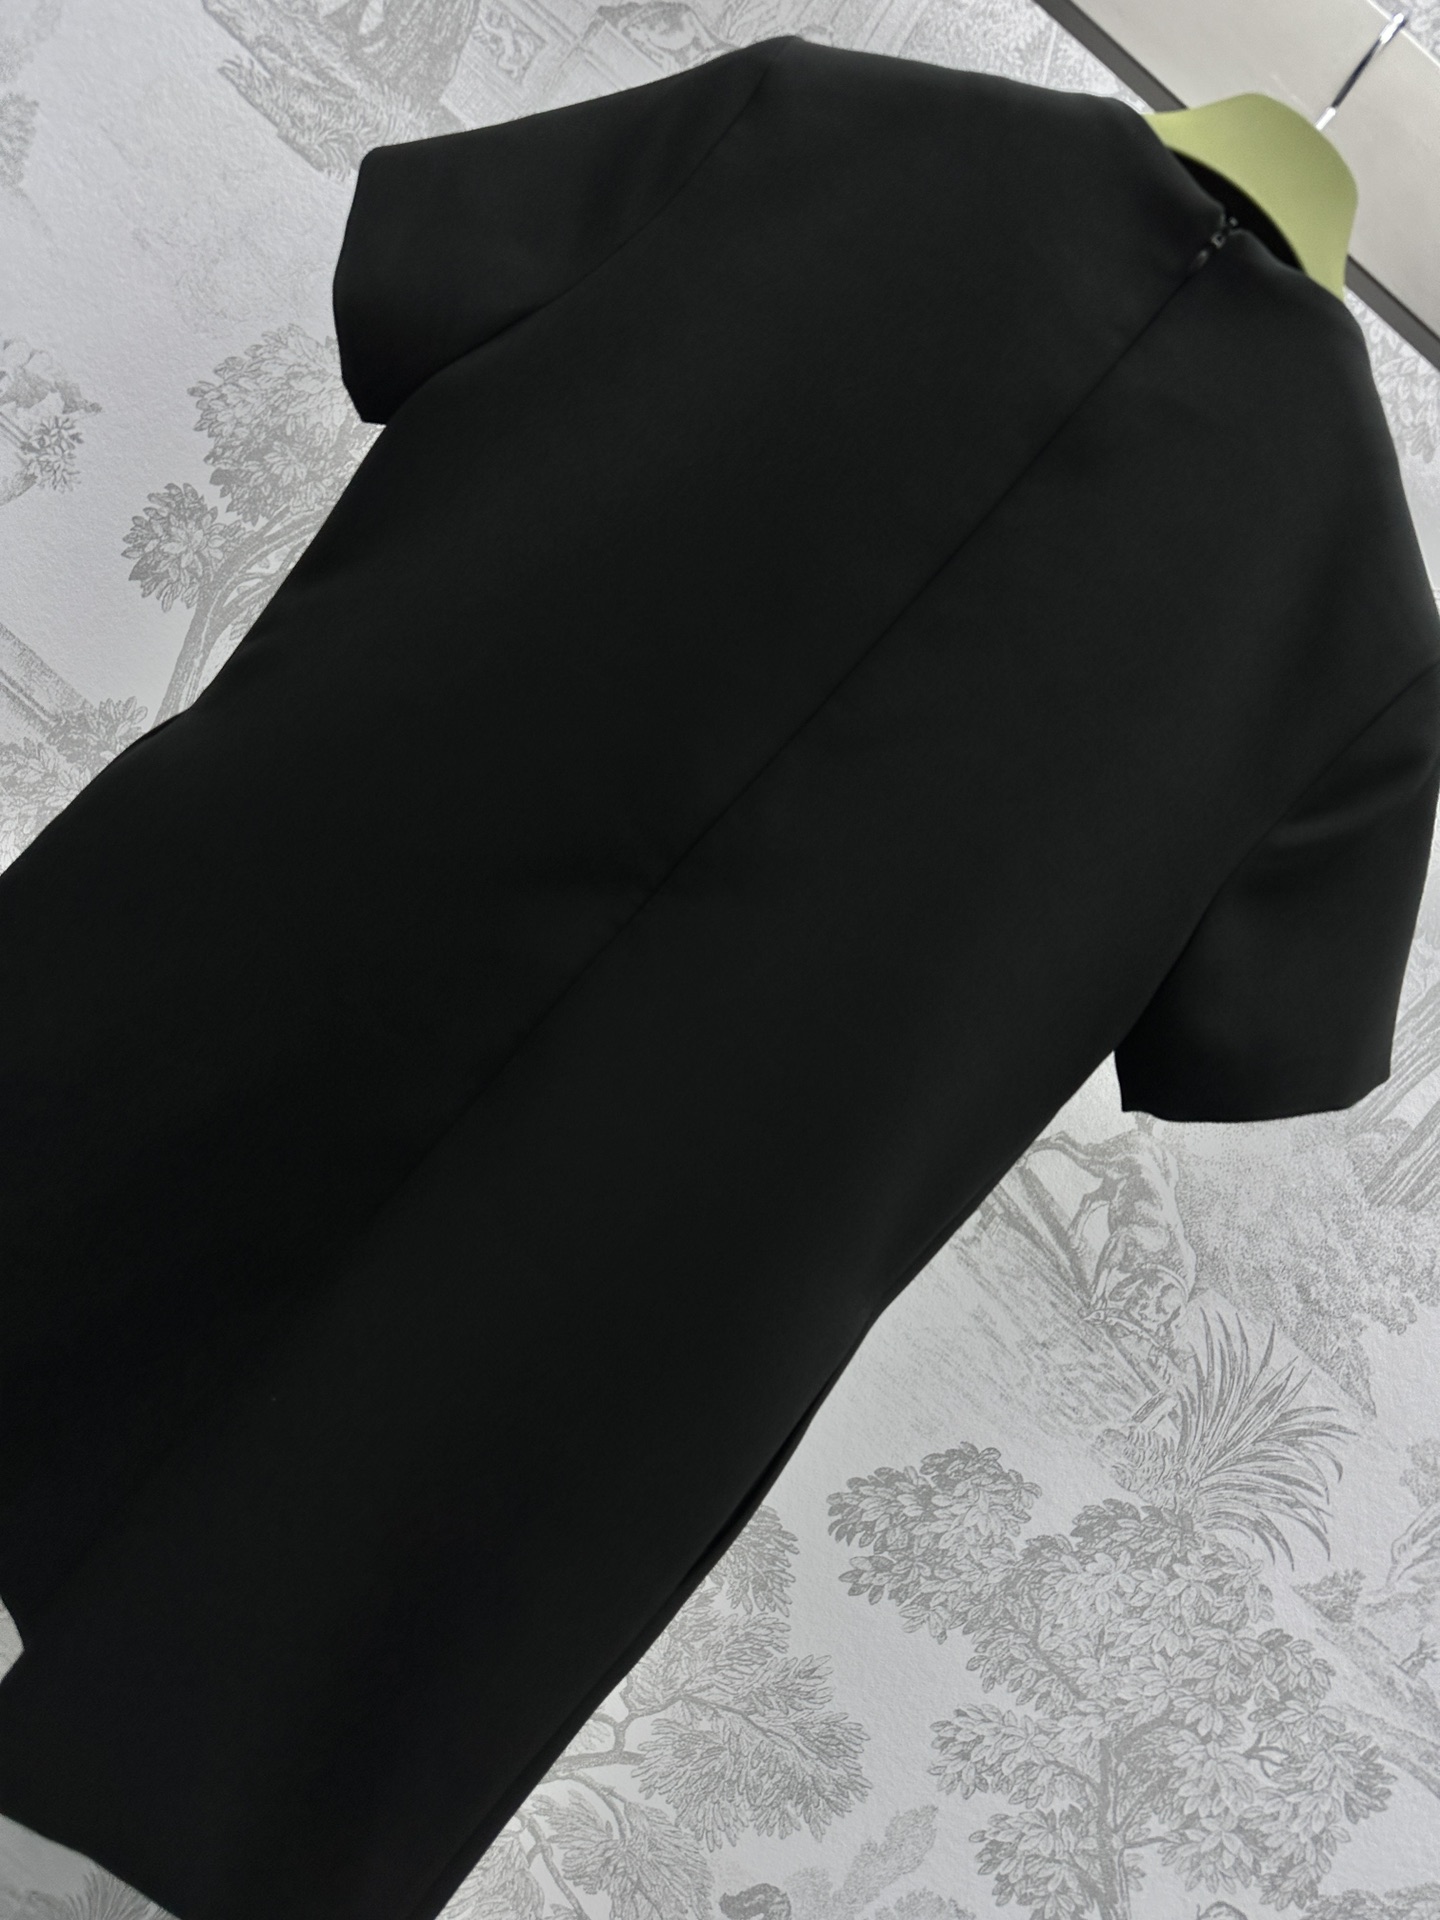 お値打ち価格 gucci t シャツコピー 純綿 トップ シンプル ワンピース スカート 柔らかい 半袖 新品 ブラック_8